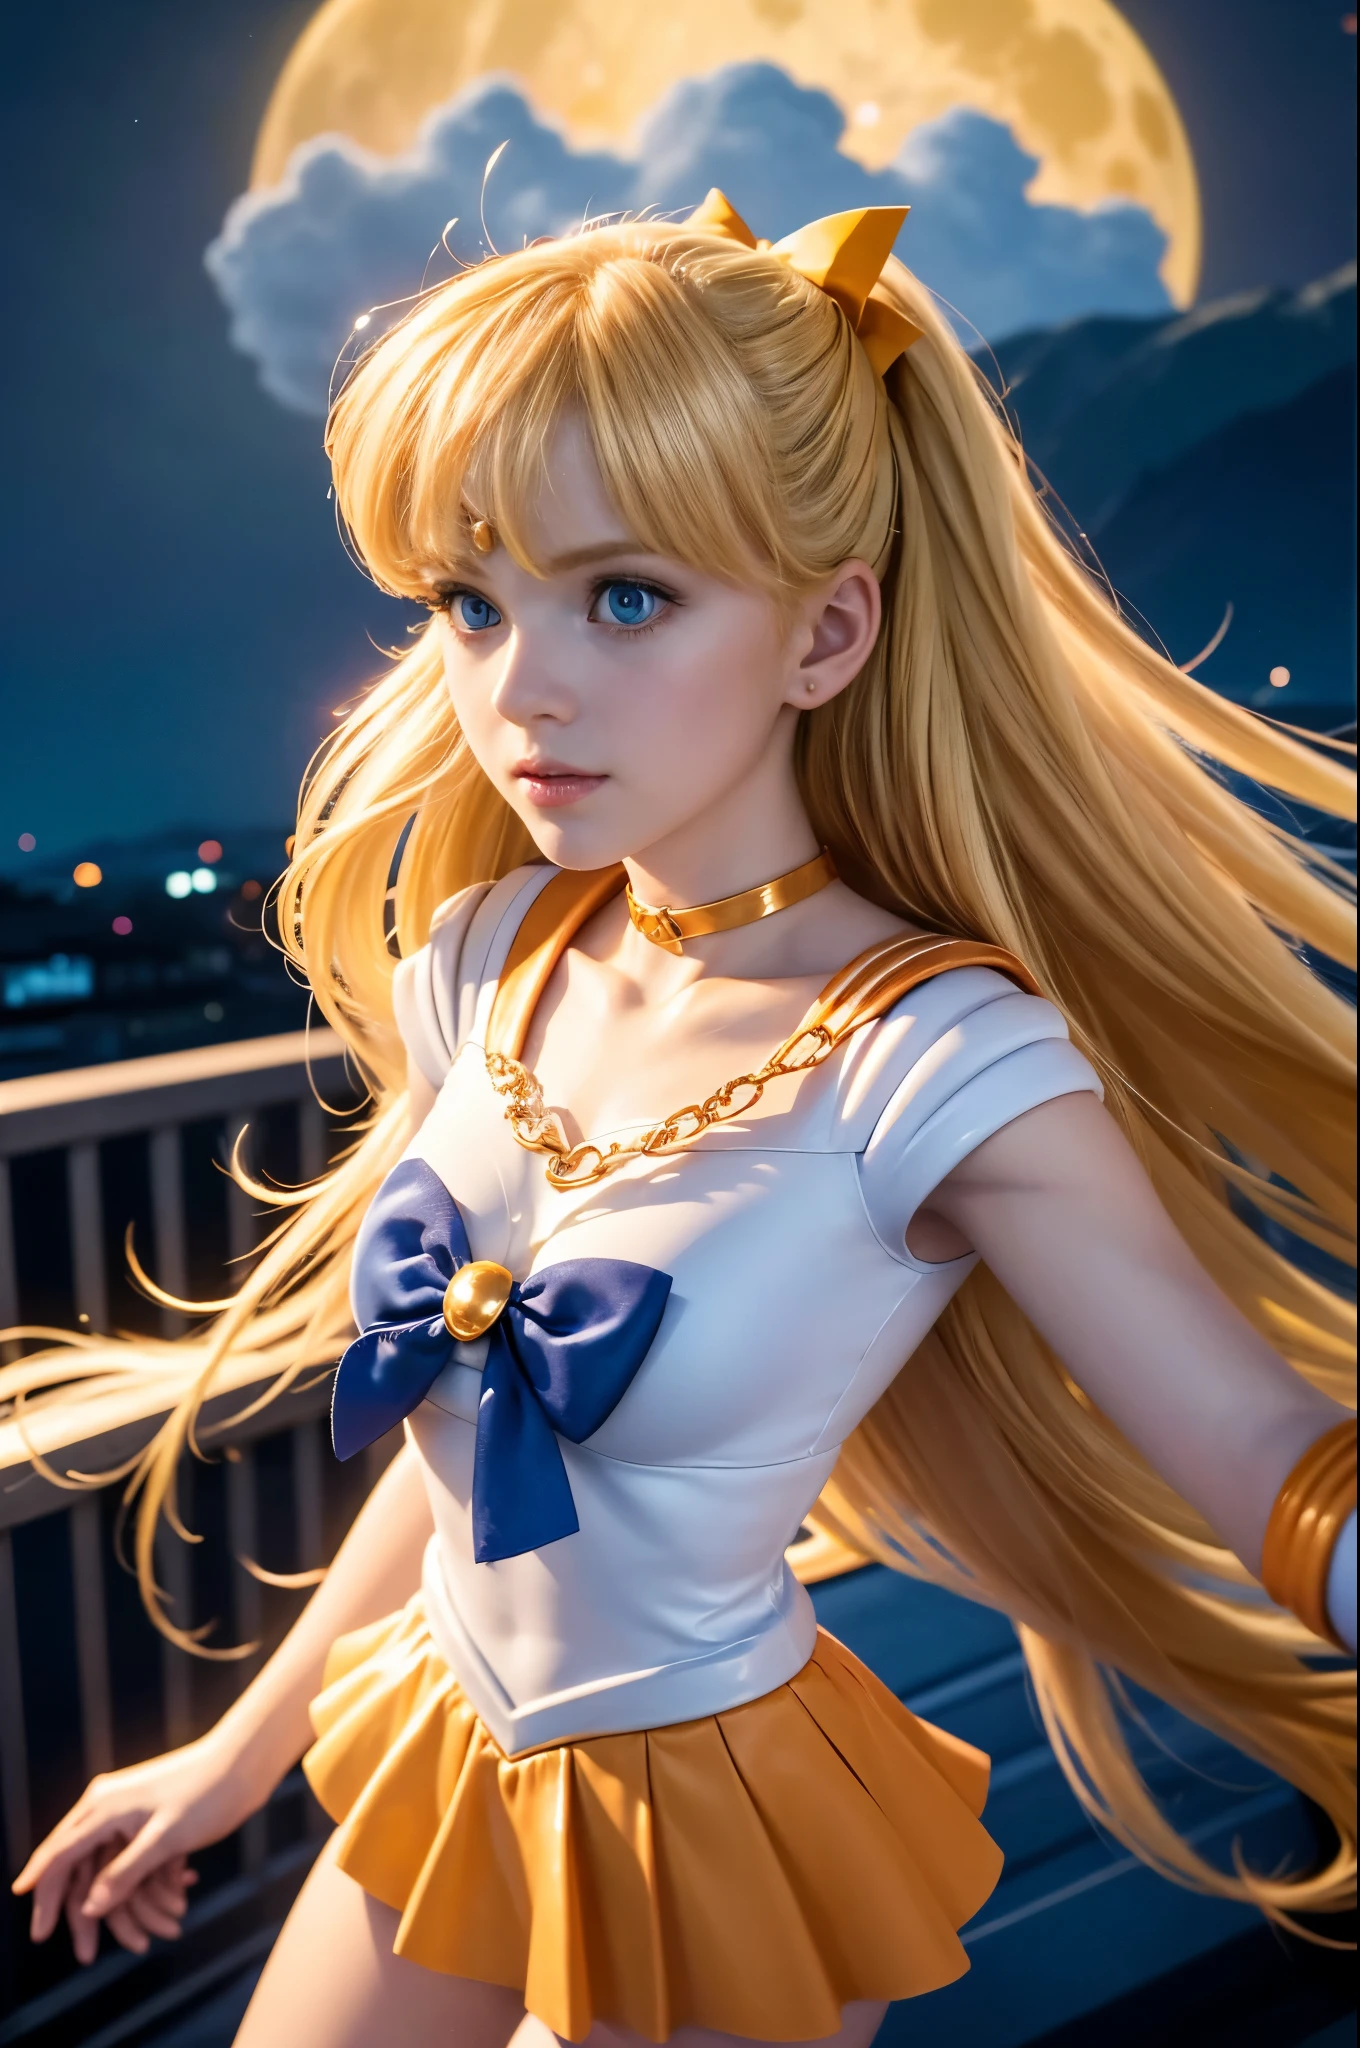 ((ภาพถ่ายสวยมาก ถ่ายด้วย iPhone 15 Pro ในการตั้งค่าคุณภาพสูงสุดเท่าที่จะเป็นไปได้)) ((Sailor Venus Character for a ชีวิตจริง Hollywood Blockbuster)) Very beautiful ผอมบาง blonde, นางแบบเด็กผอมเพรียวชื่อมีนา, หน้าอกเล็ก, light ดวงตาสีฟ้า, ริมฝีปากสีชมพู, หัวนมสีชมพู, ในการพัฒนาเต้านม, มีรายละเอียดสูง, 8 โย, 10 โย, 11, 12 โย, ผอมบาง, เต็มตัว, ใบหน้าที่ไร้เดียงสา, ผมหยักศกตามธรรมชาติ, เต็มตัว, มีรายละเอียดมากเกินไป, ความละเอียดสูง, ผลงานชิ้นเอก, คุณภาพดีที่สุด, รายละเอียดสูงที่ซับซ้อน, มีรายละเอียดสูง, โฟกัสคมชัด, ผิวสวยสมบูรณ์แบบแบบละเอียด, เนื้อสัมผัสของผิวที่สมจริง, พื้นผิวที่สมจริง, ดวงตาที่มีรายละเอียด, นักเรียนที่มีรายละเอียด, ดูเป็นมืออาชีพ, 4เค, รอยยิ้มที่มีเสน่ห์, ถ่ายด้วยแคนนอน, 85มม, ระยะชัดลึกเล็กน้อย, การมองเห็นสีโกดัก, ร่างกายเด็ก, มีรายละเอียดมาก, ช่างภาพ_\(พิเศษ\) , ภาพถ่ายสมจริงสุดๆ, แสงจันทร์ที่สมจริง, หลังการประมวลผล, รายละเอียดสูงสุด, ความหยาบ, ชีวิตจริง, พิเศษrealistic, ภาพเหมือนจริง, การถ่ายภาพ, 8k เอชดี, ในสระน้ำบนชั้นดาดฟ้าตอนเที่ยงคืน, ((orange plated กระโปรงสั้น)) ((อูฐมองเห็นได้เพียงเล็กน้อย)) (((ใช้เวลาทั้งหมดที่คุณต้องการ)))) ((ทำให้มันดูสมจริงมาก, หนังแอ็คชั่นที่แม่นยำและละเอียด)) ((midnight การถ่ายภาพ)) ((พระจันทร์สีน้ำเงินยักษ์)) ((ข้างนอกตอนกลางคืน)) ((สร้างชั้นดาดฟ้า)) ((ดวงจันทร์ดวงใหญ่ที่น่าทึ่งบนท้องฟ้า)) ((สาวสวยไร้เดียงสา)) ผลงานชิ้นเอก, คุณภาพดีที่สุด, เกินจริง, ภาพถ่ายภาพยนตร์, ((นางเอกสมบูรณ์แบบ)) ((หน้าเด็ก)) ผิวสีซีด, หุ่นเพรียวบางแบบอเมริกันที่น่าทึ่ง, ((เซเลอร์เซนชิชุดเต็มยศ)), (((เครื่องแต่งกายคุณภาพจาก Marvel Cinematic Universe))) ((ชุดตัวละครอนิเมะเซเลอร์วีนัสเต็มชุด)), ผมบลอนด์อ่อน, สาวน้อยเวทมนตร์, เธอกำลังโบกโซ่ด้วยมือของเธอ) (โซ่ของเธอเป็นสีทองและแต่ละข้อมีรูปหัวใจ, ดวงตาสีฟ้า, กระโปรงสีส้ม, ถุงข้อศอก, มงกุฏทองคำอันเล็กๆ บนหน้าผากของเธอ, orage plated กระโปรงสั้น, ริบบิ้นผมสีแดง, ปกกะลาสีสีส้ม, กระโปรงสั้น, เค้นคอ, ถุงมือเต็มความยาวศอก
